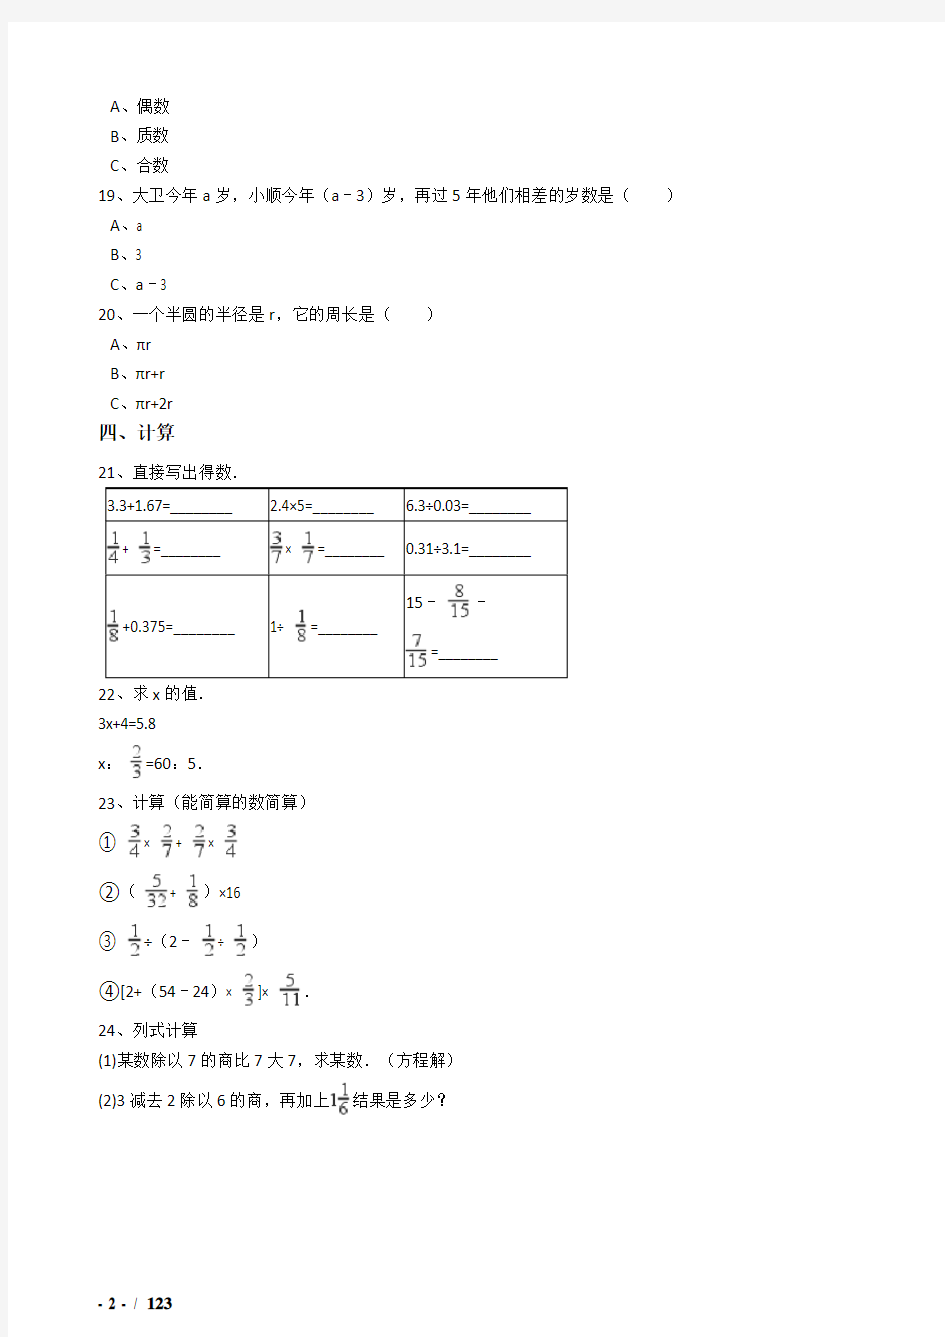 2018年上海市小升初数学模拟试题(共10套)详细答案